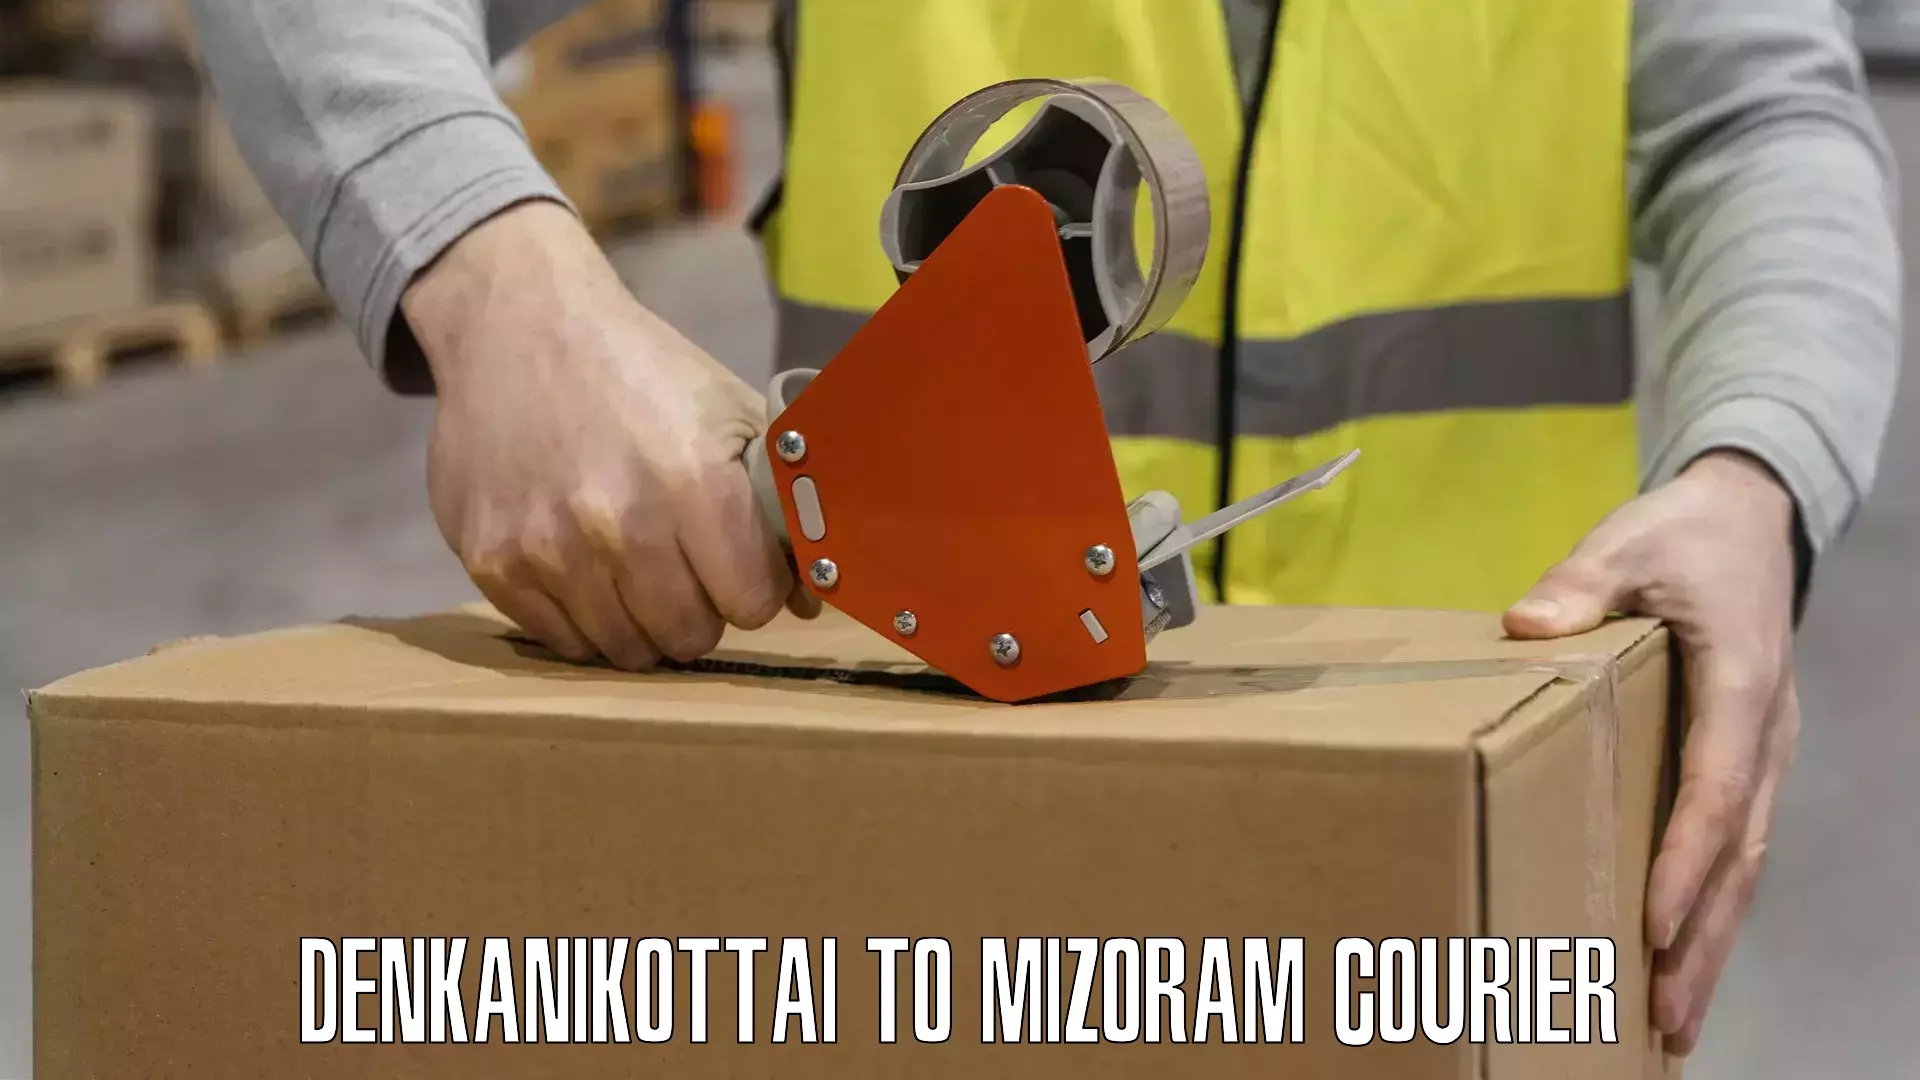 Reliable freight solutions Denkanikottai to Mizoram